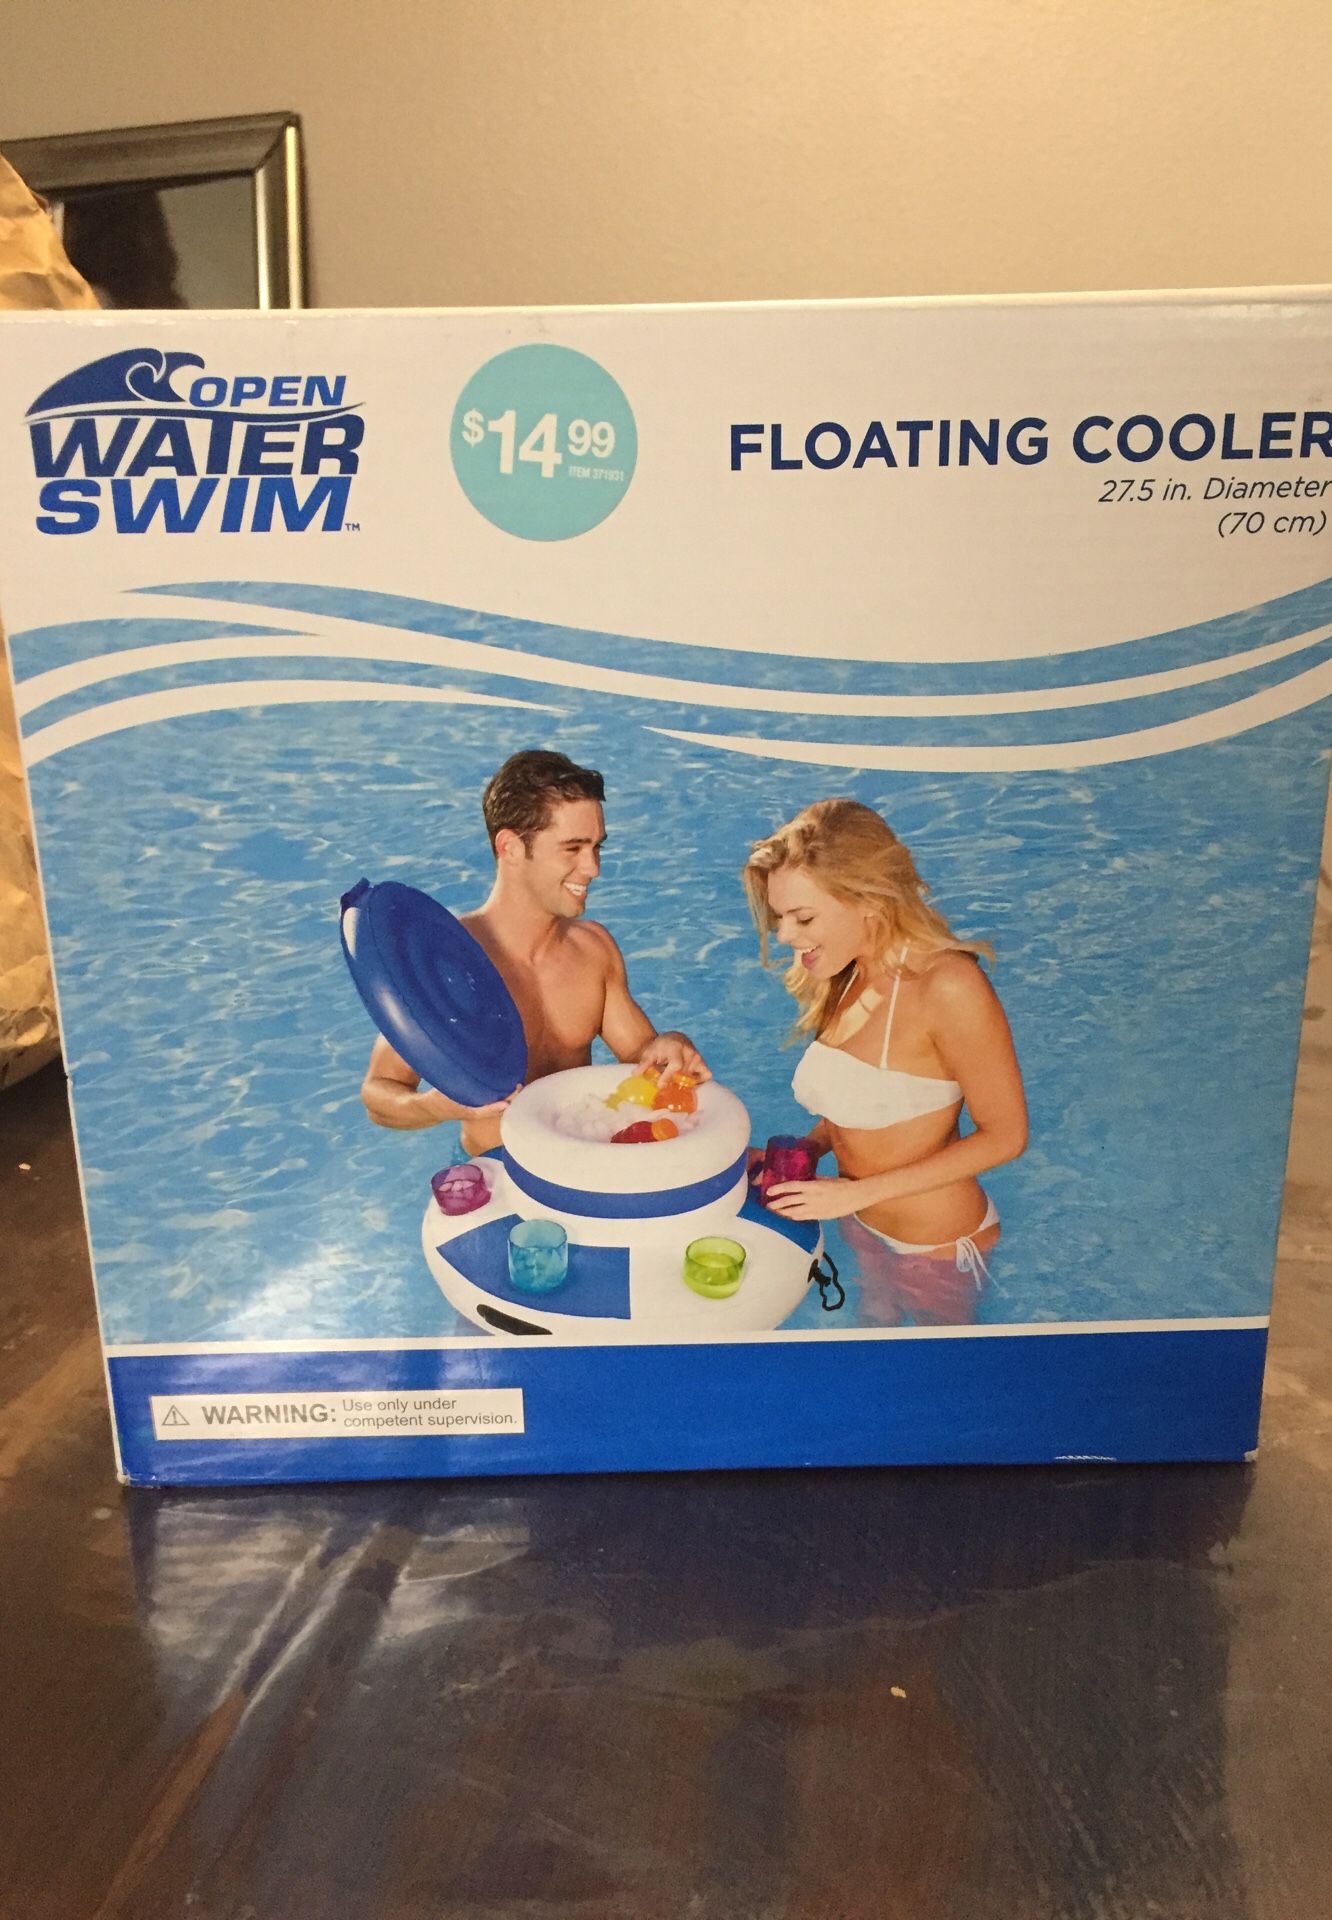 Floating cooler